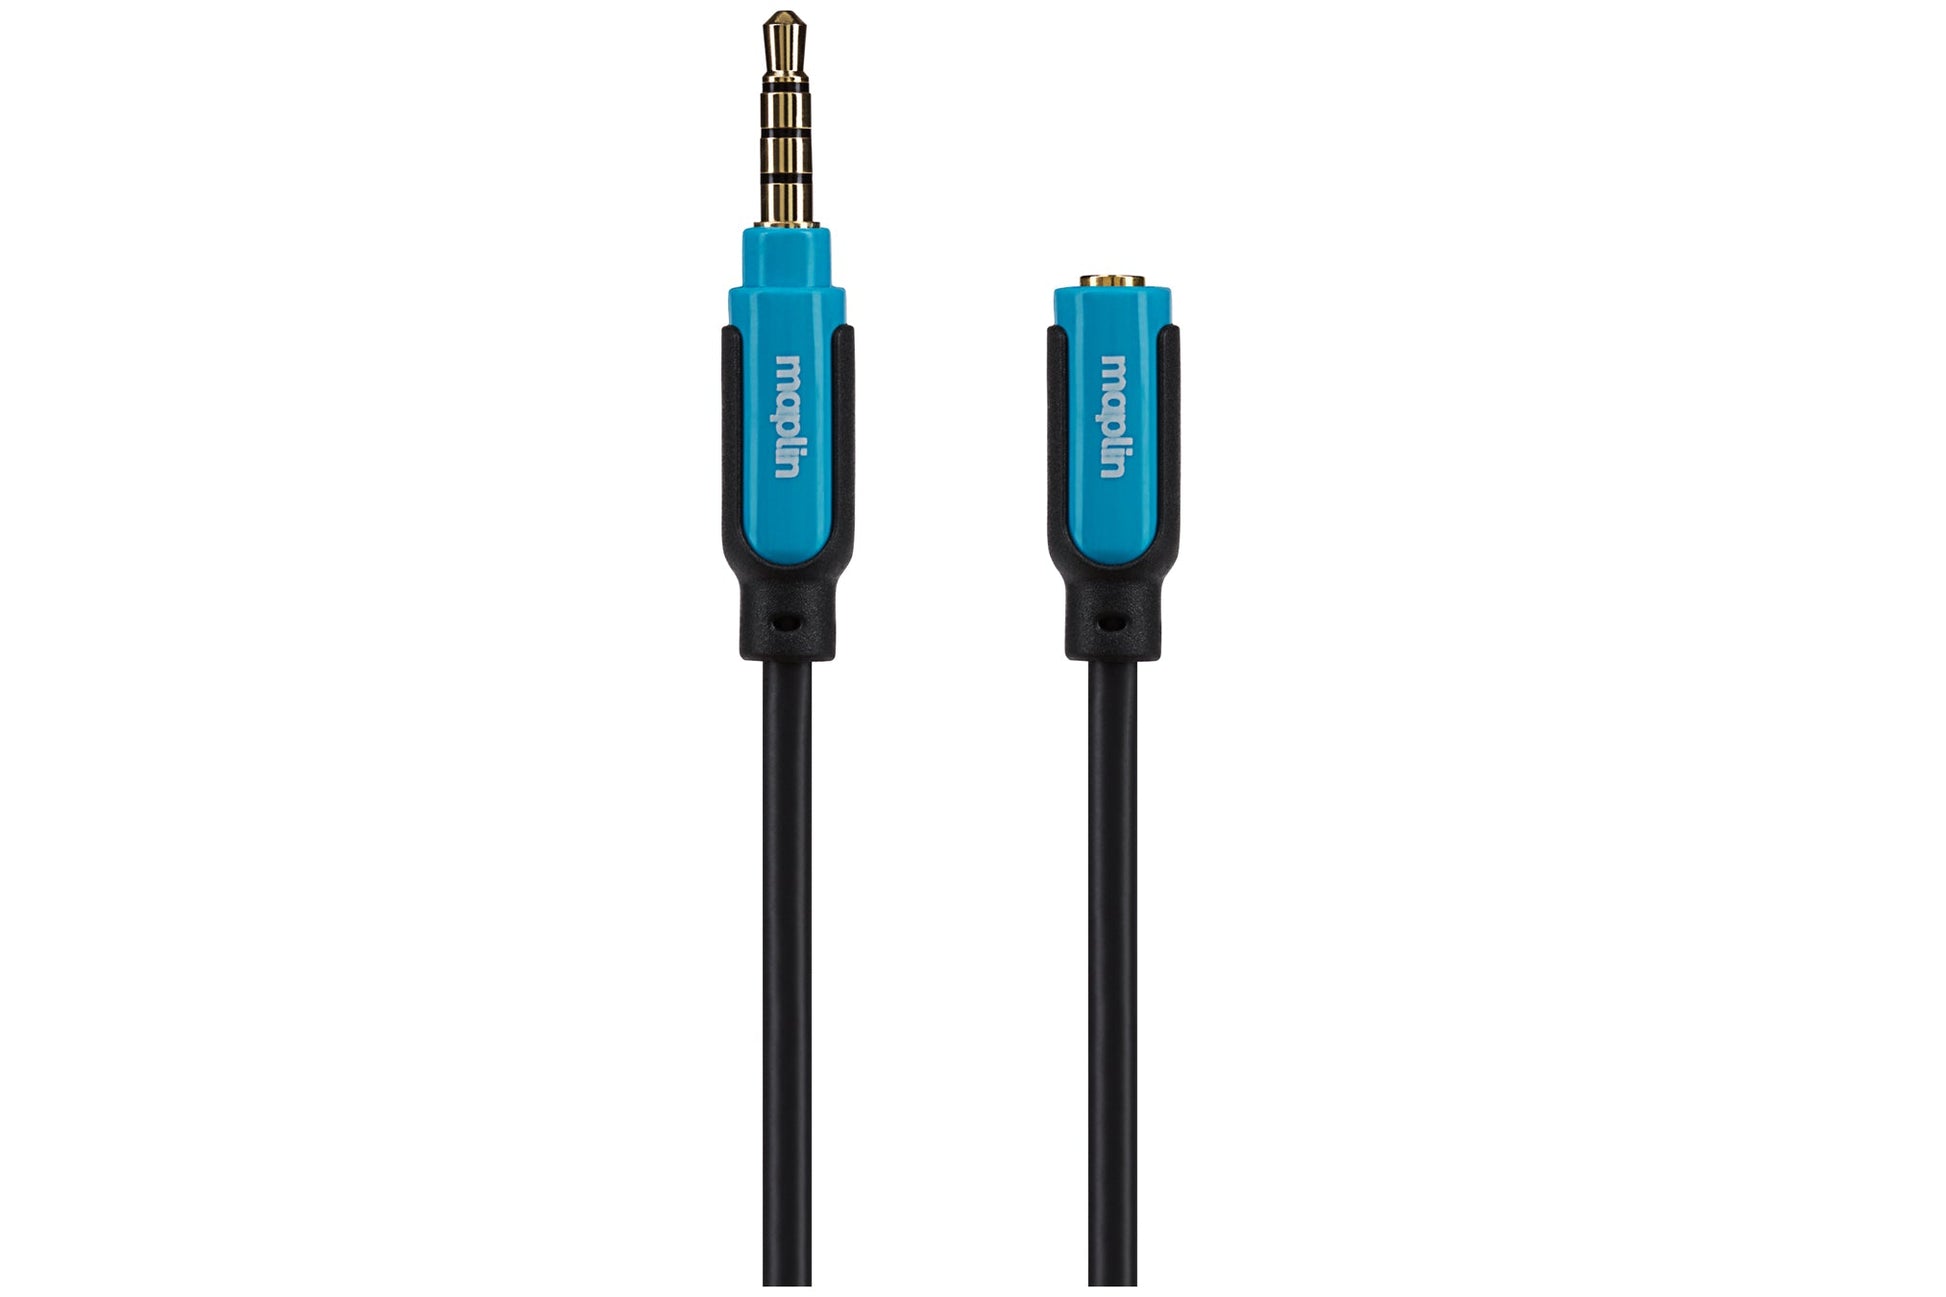 Maplin Premium 3.5mm 4 Pole Jack Extension Cable - Black, 3m, Cables